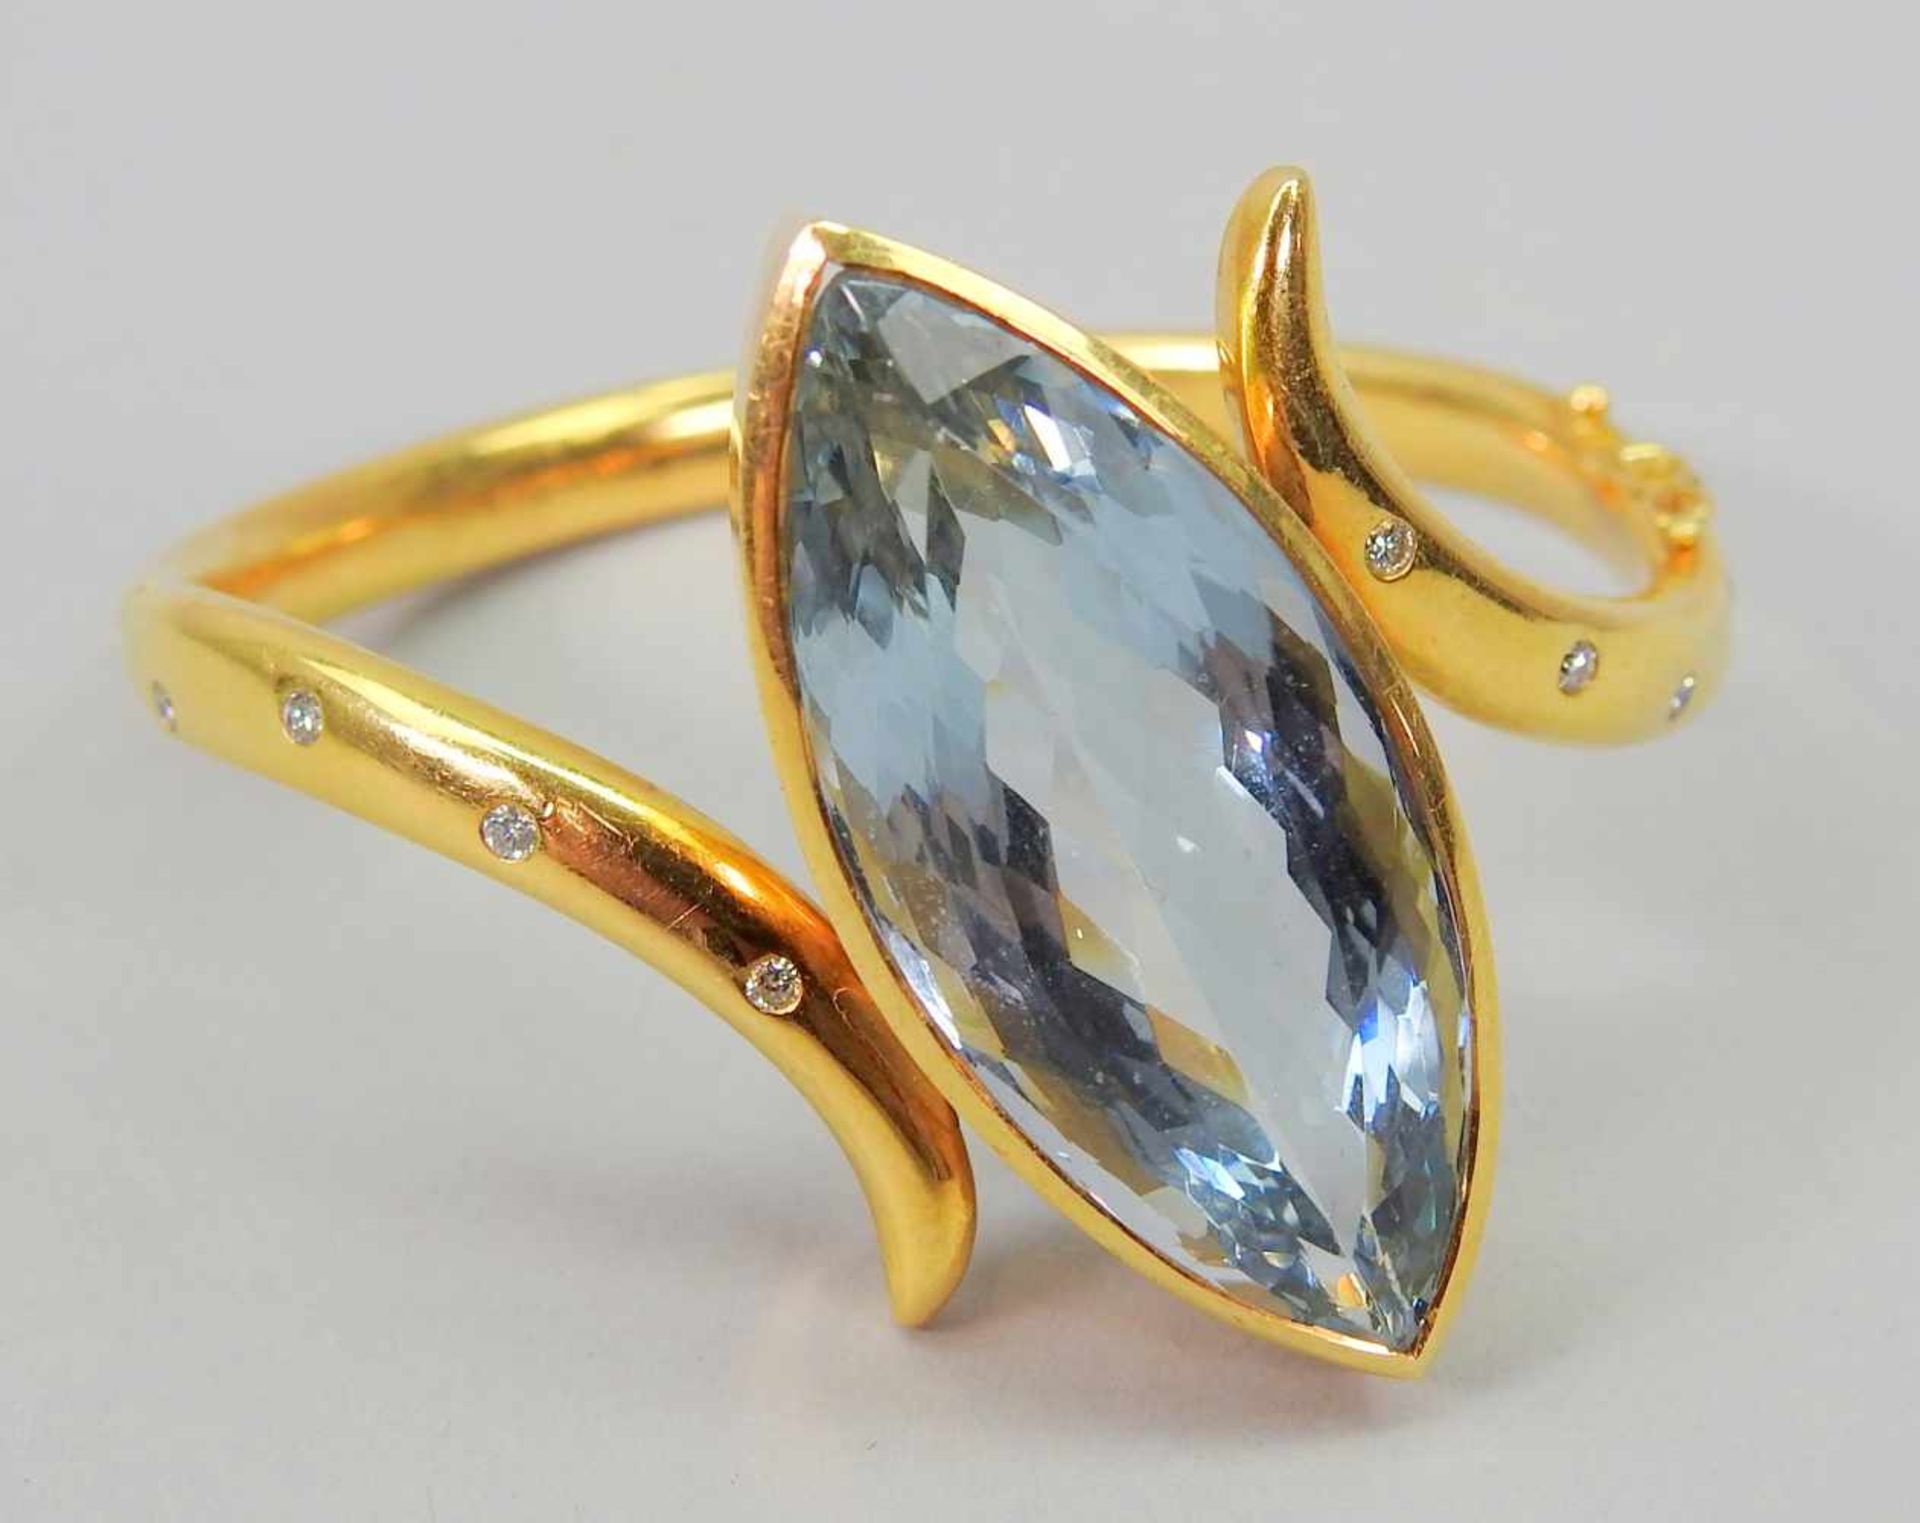 Prunkvoller Aquamarin-Armreif18 K. Gelbgold mit 8 eingefassten Diamanten von insgesamt 0,20 ct und